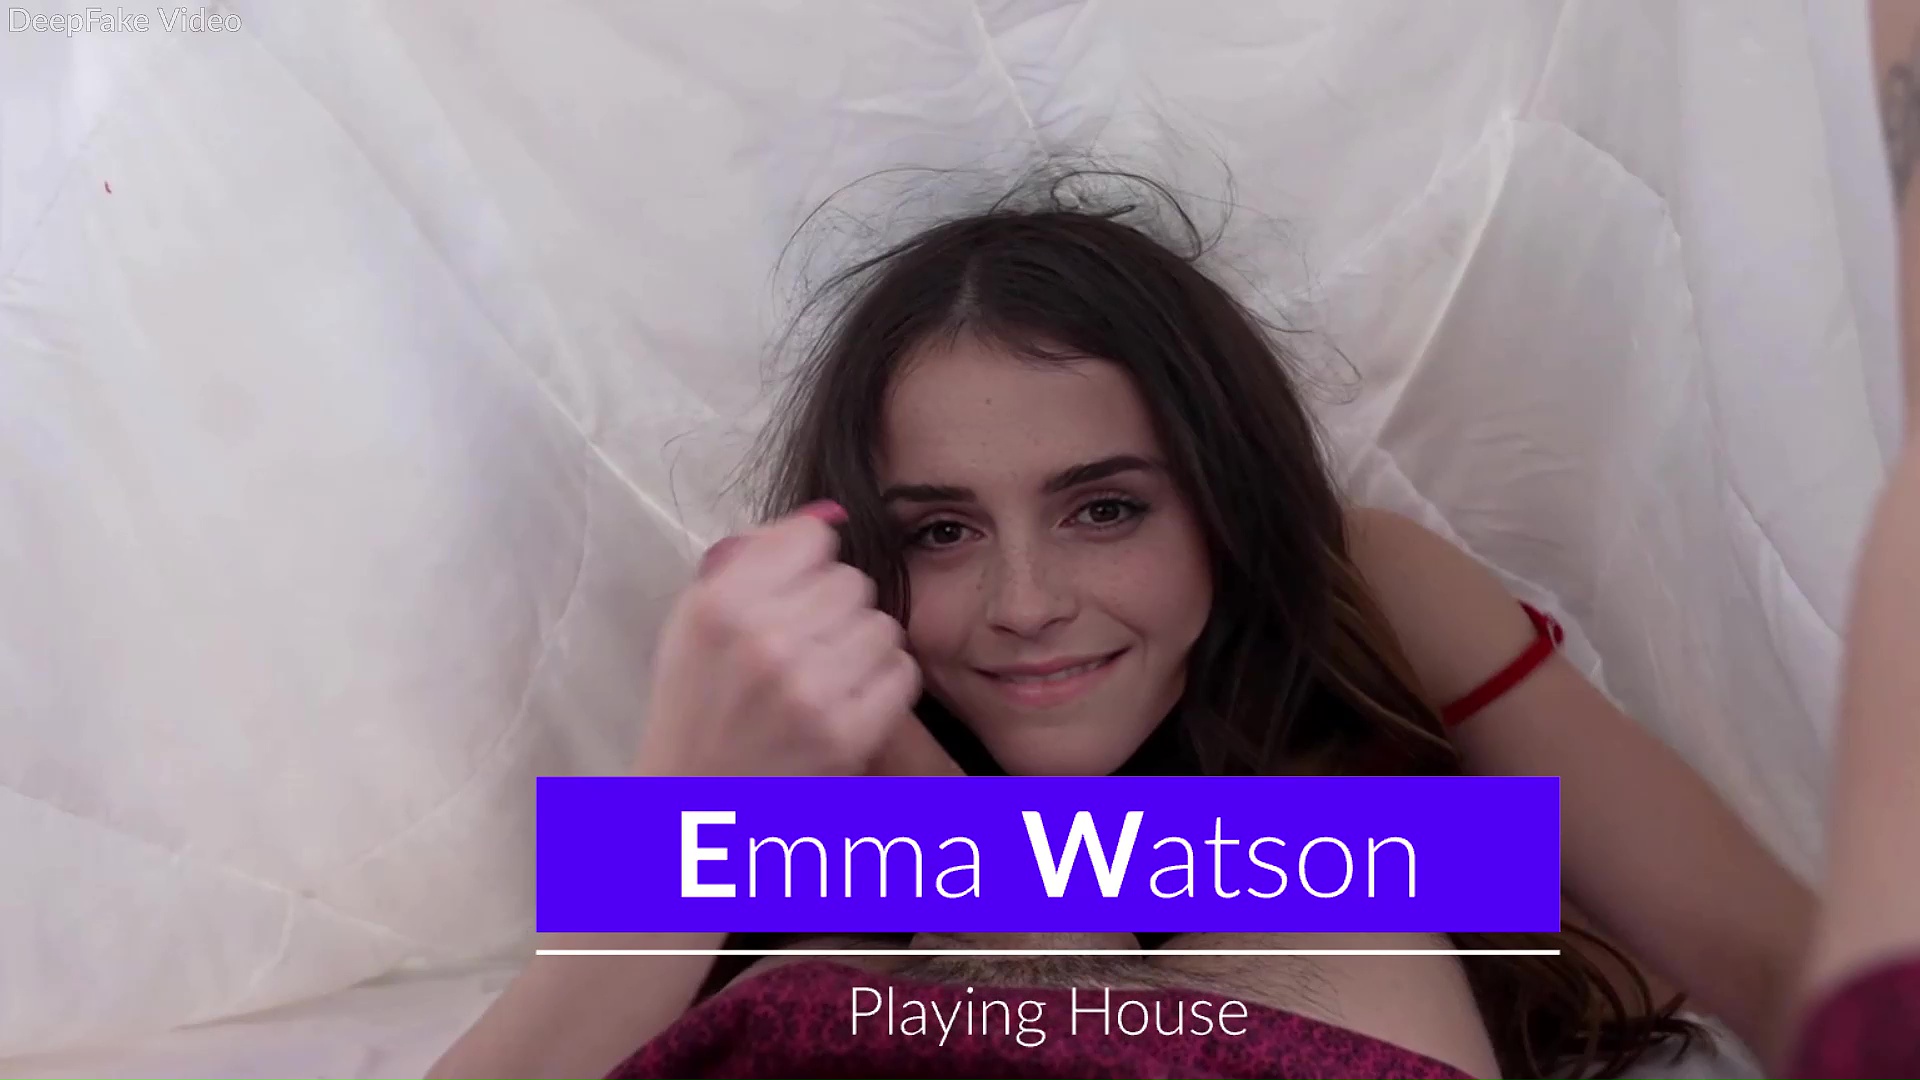 Emma Watson - Playing House - Trailer